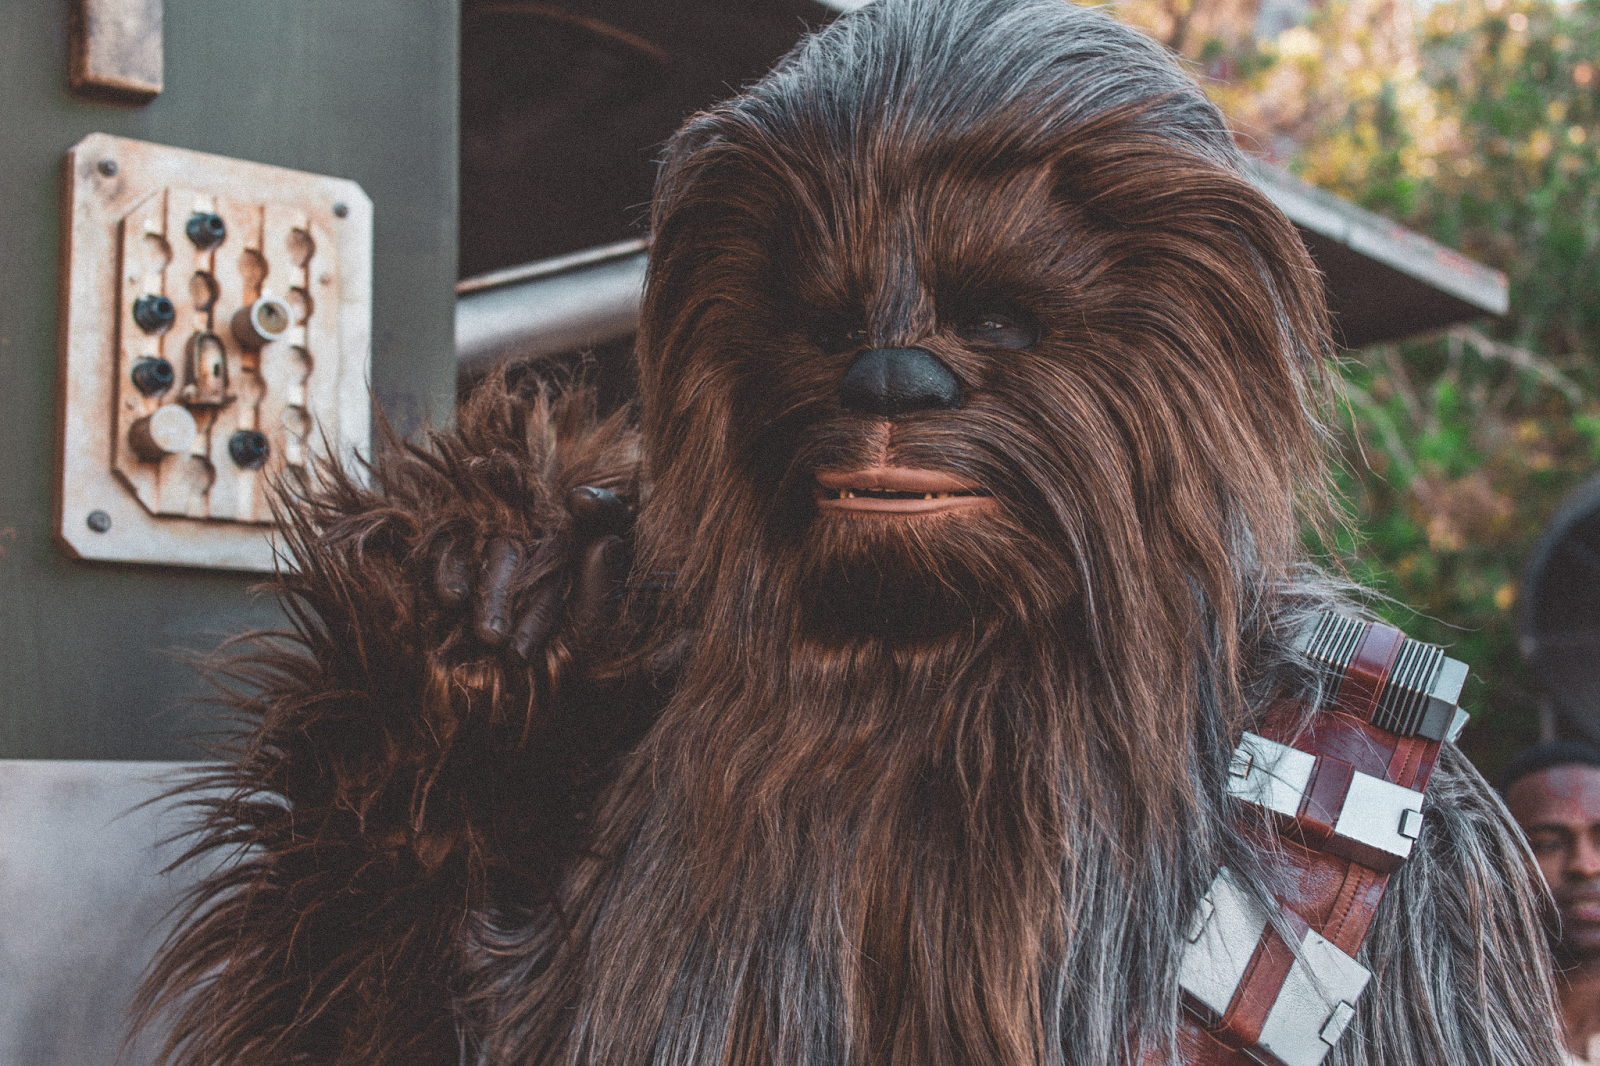 Wookie Character of Star Wars Movie